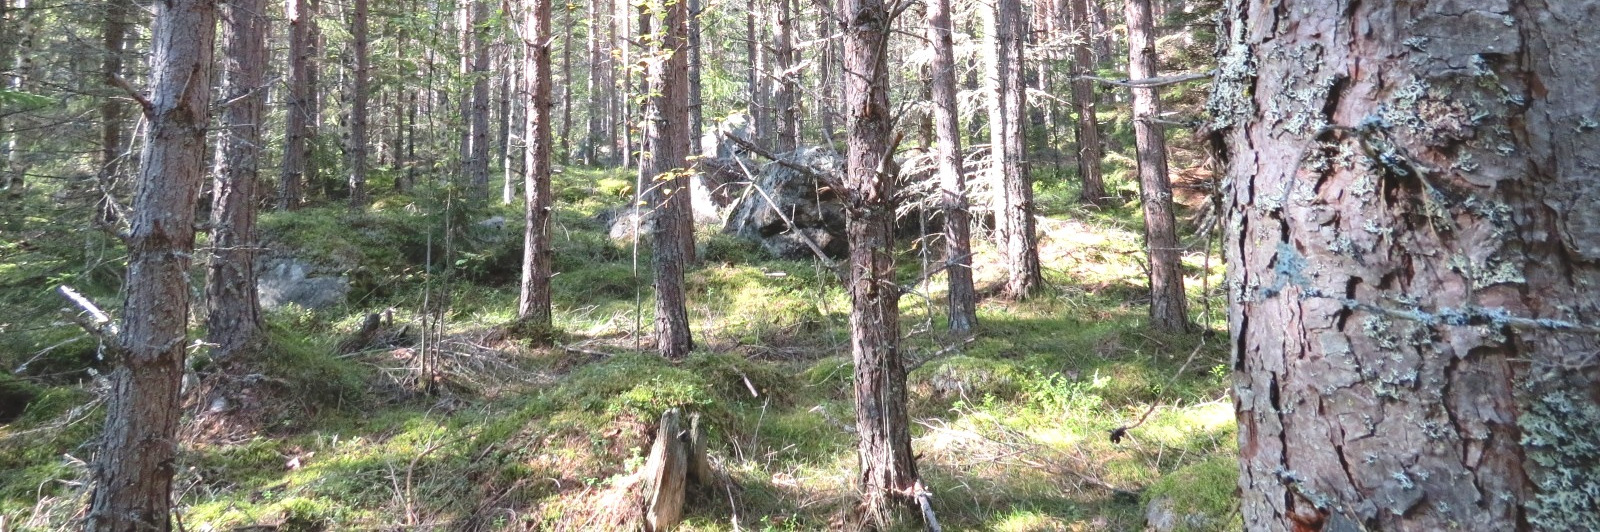 Skogsfastighet i Matfors, Sundsvall Skogsfastigheterna Sundsvall Tuna-Rude 1:17, 1:18 och